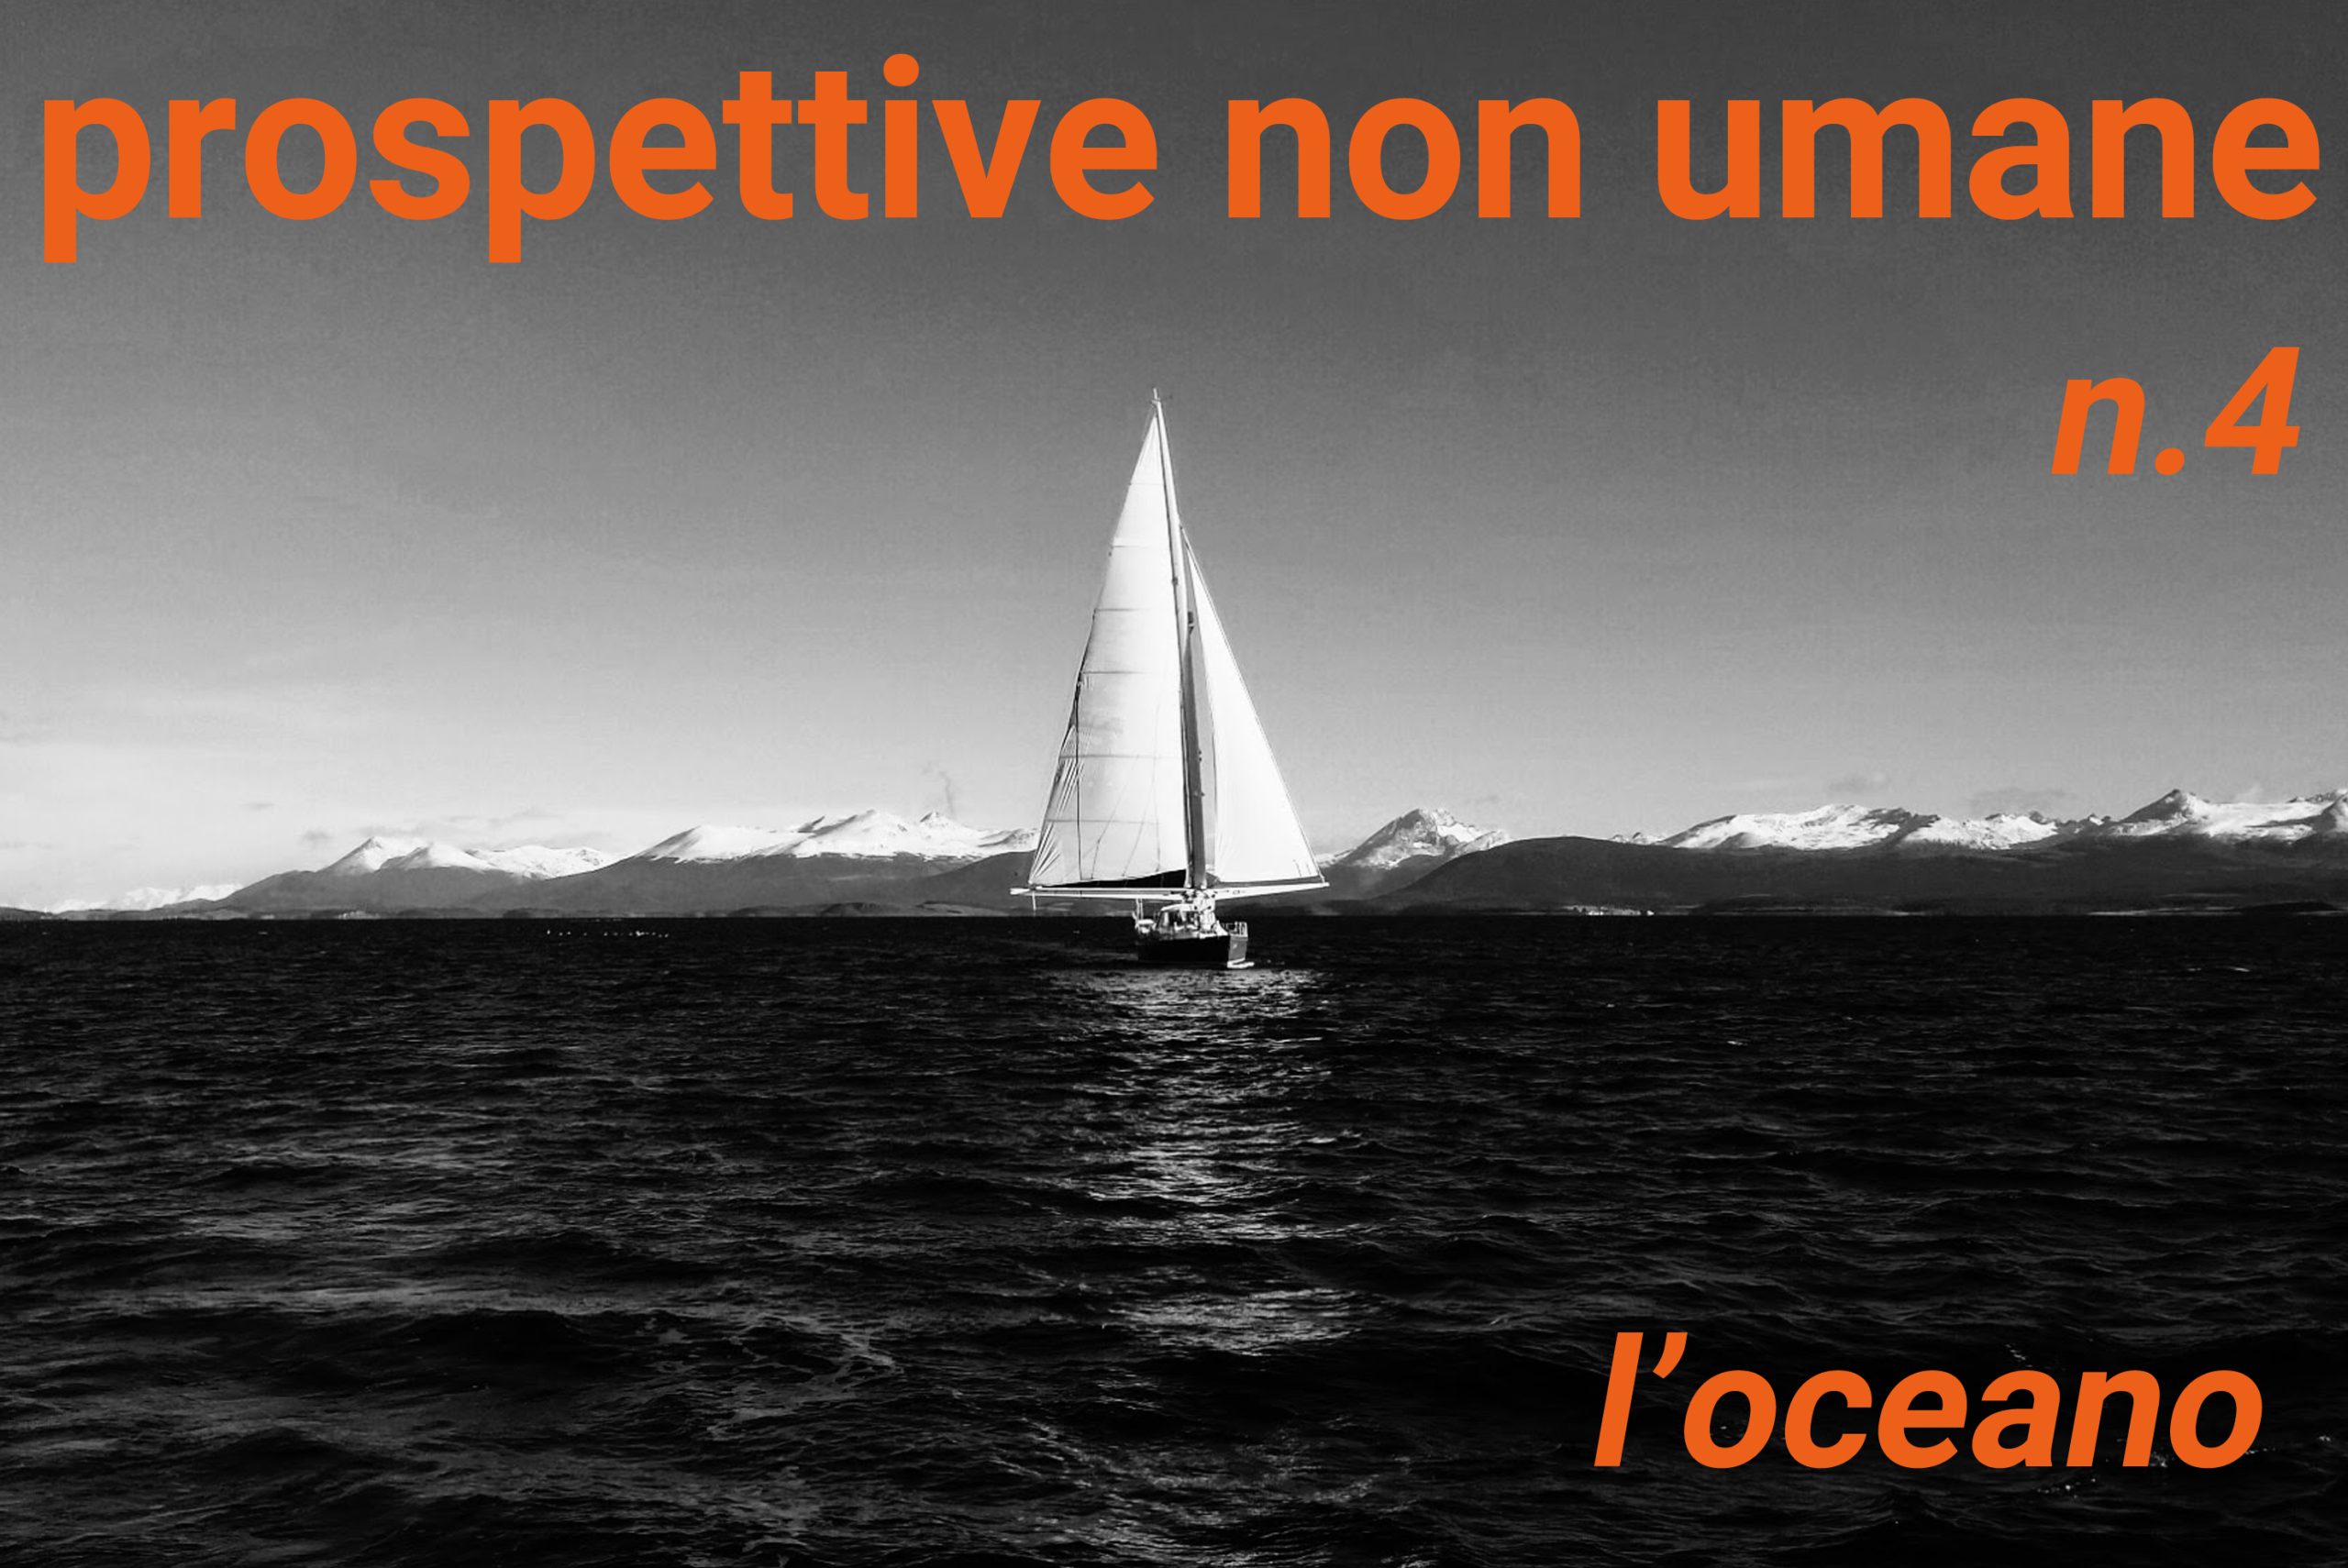 www.novantatrepercento.it n.31 "prospettive non umane n.4 - l'oceano", foto di Lorenzo Pavolini - Canale di Beagle, 2015